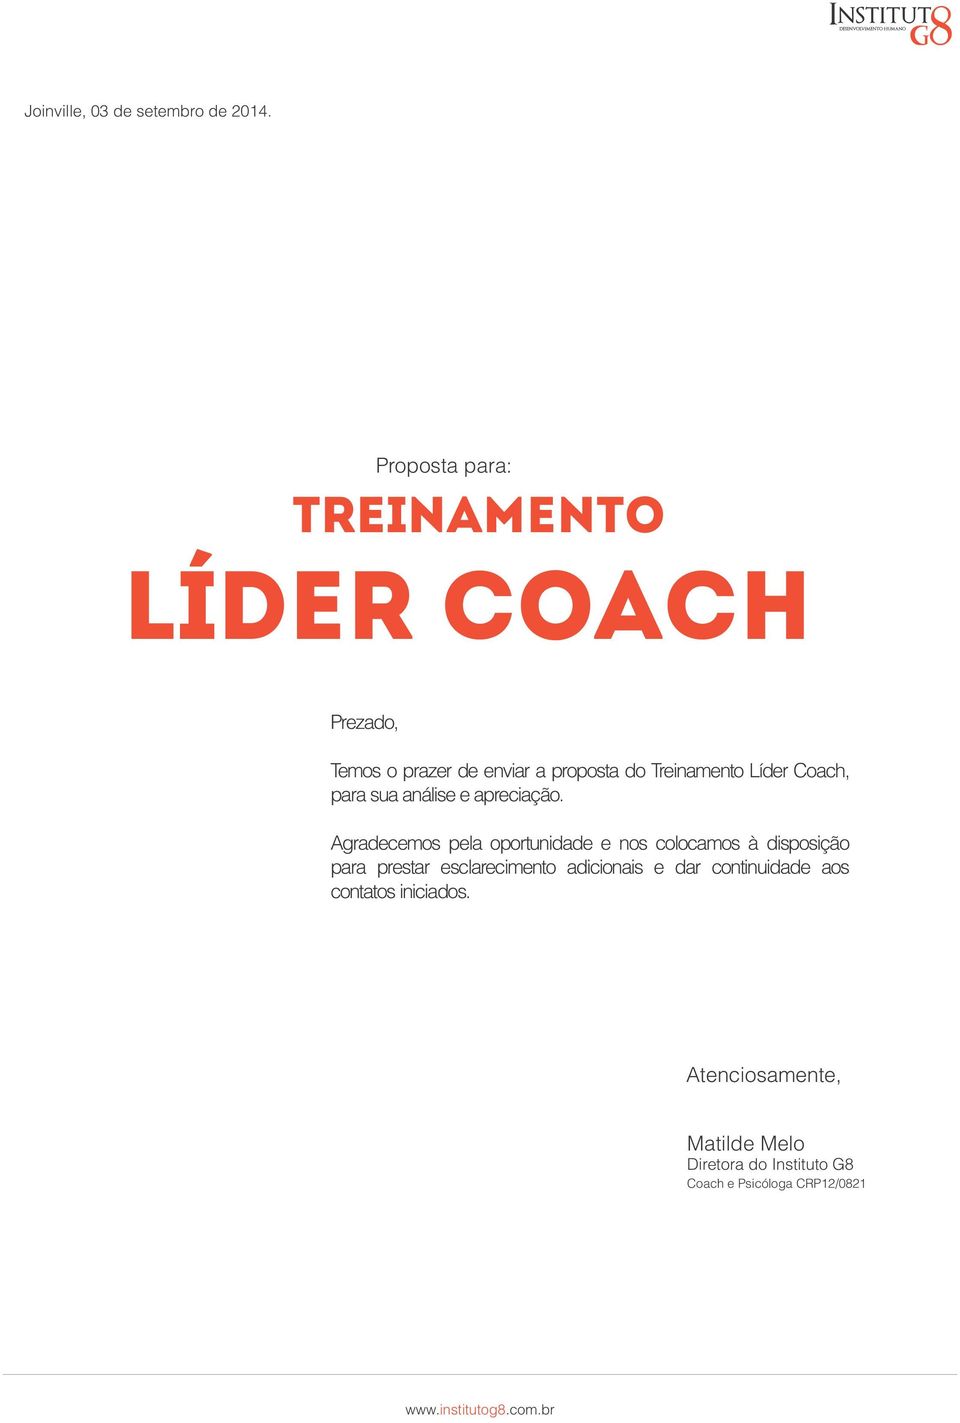 Líder Coach, para sua análise e apreciação.